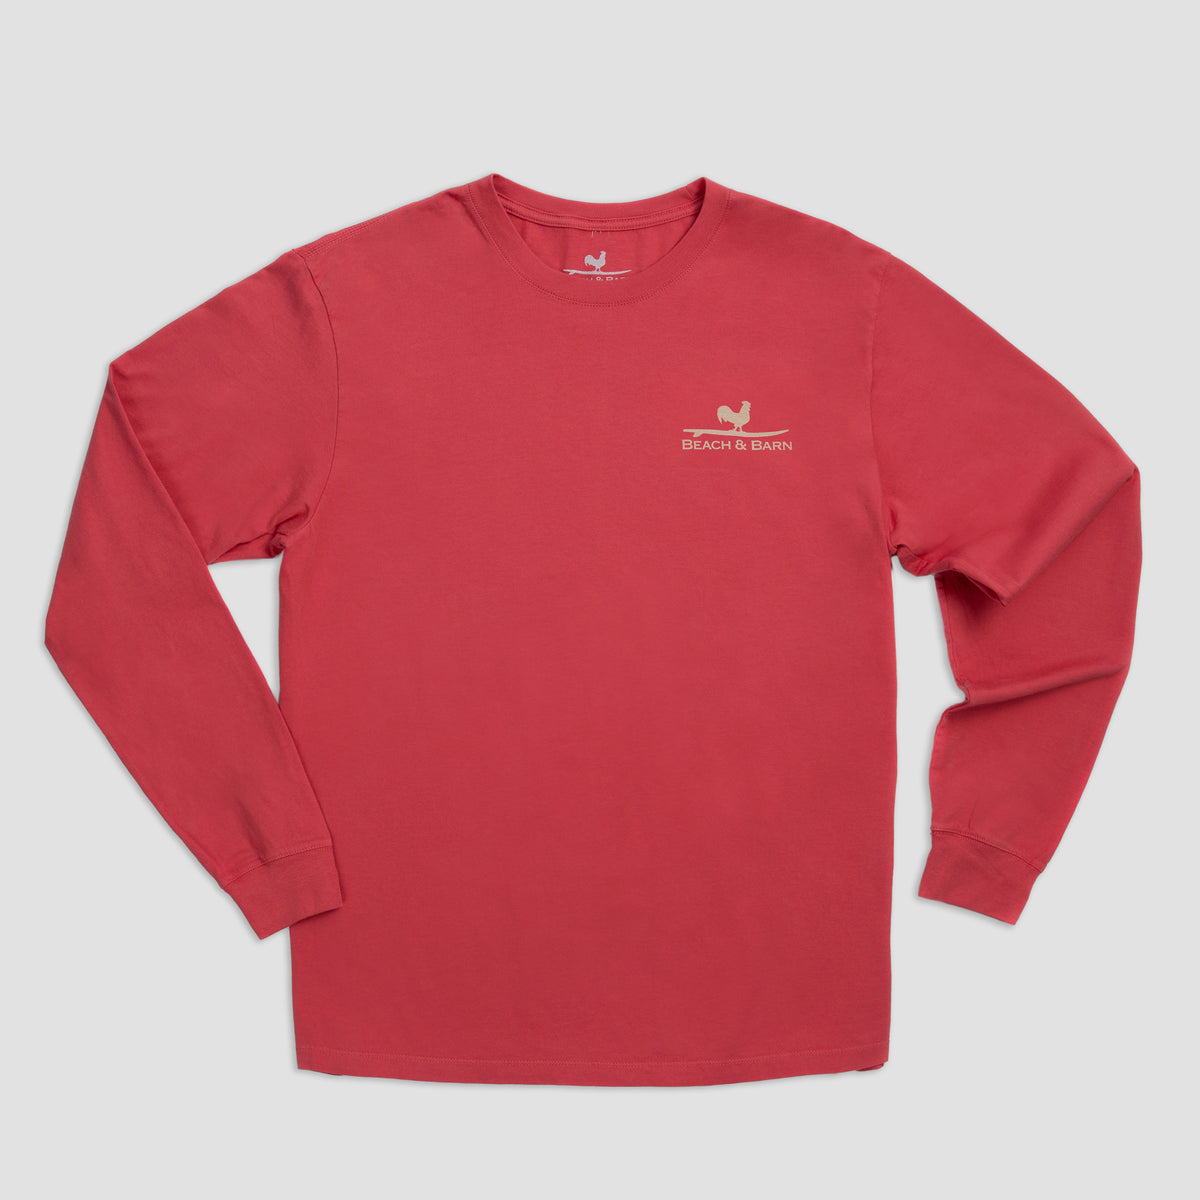 Sale - Coastal County Line Long Sleeve Tee Shirt